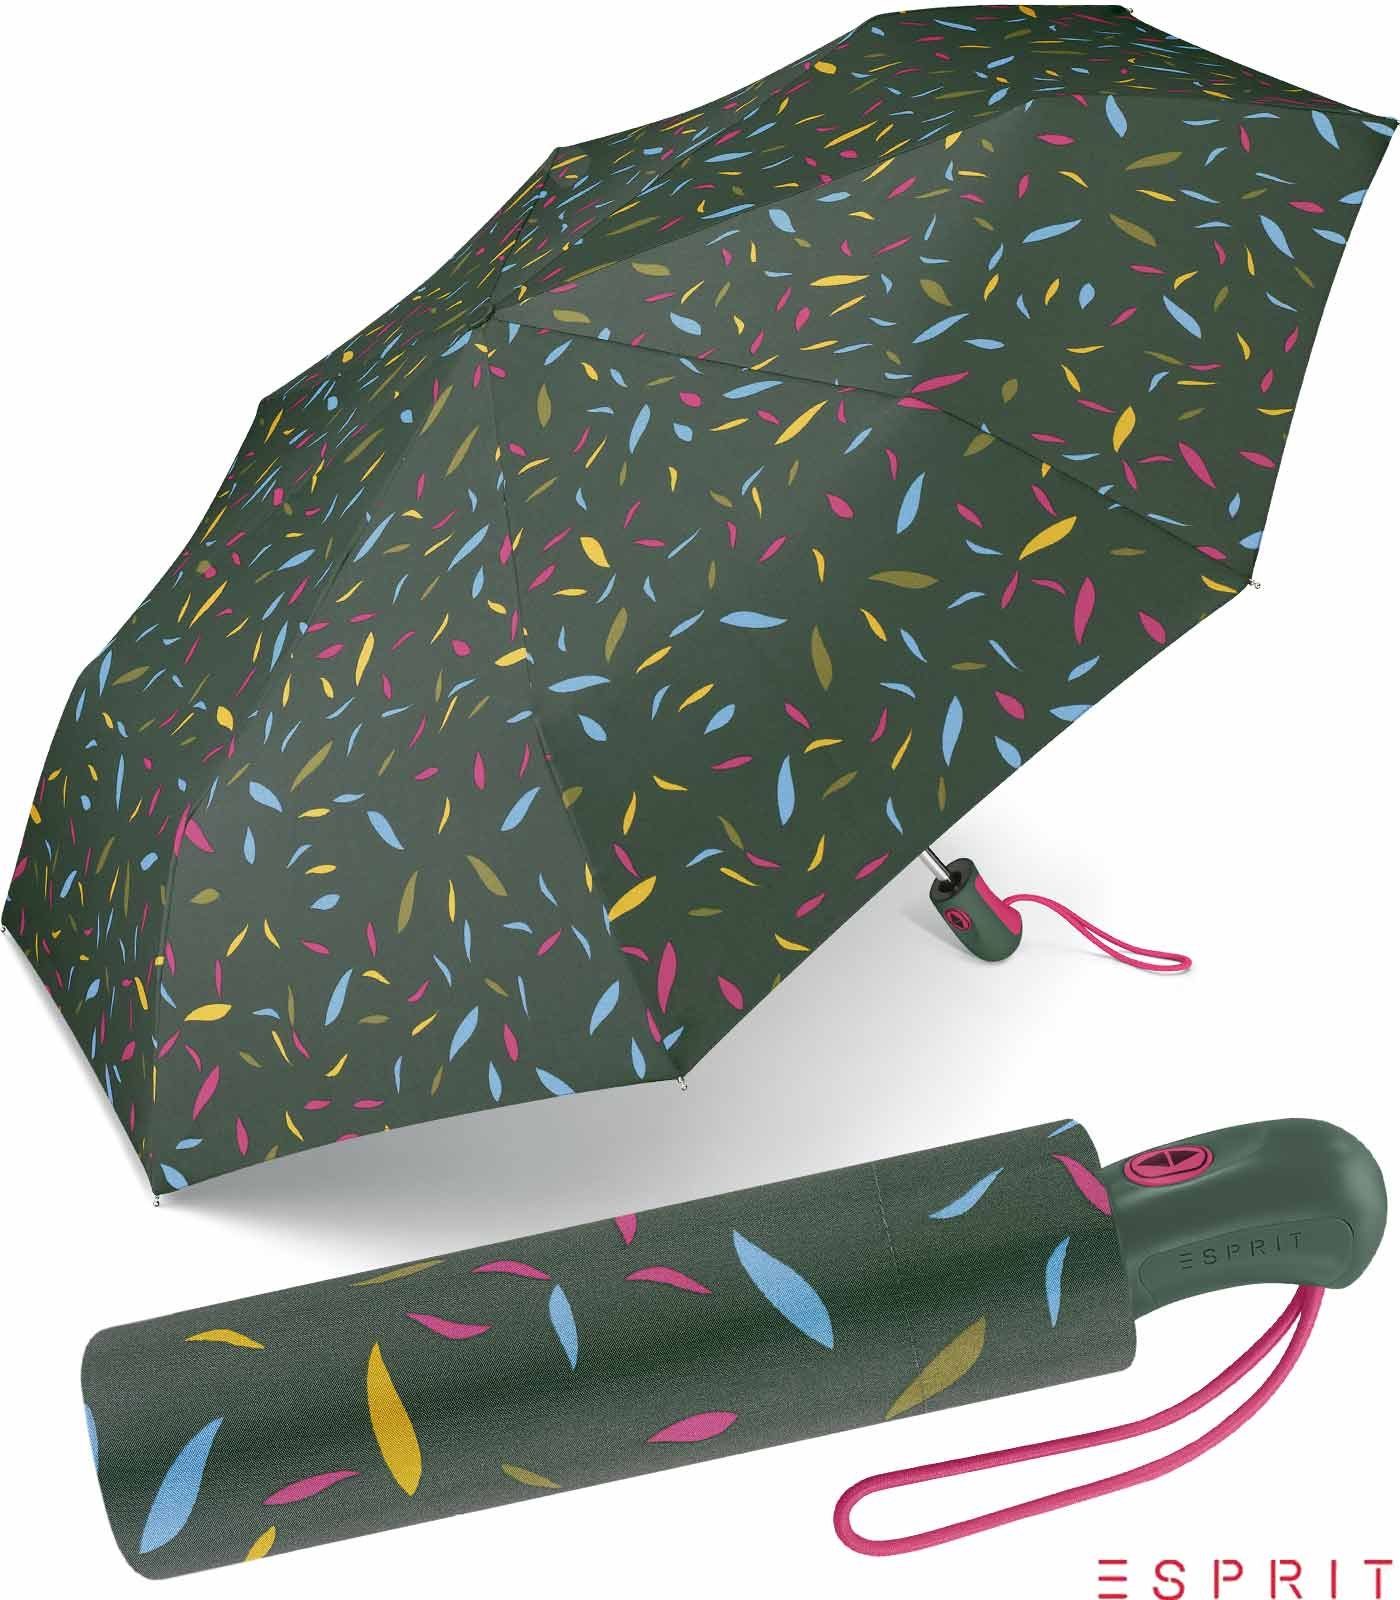 Esprit Taschenregenschirm schöner Schirm für Damen mit Auf-Zu Automatik, das besondere Design als Eyecatcher grün